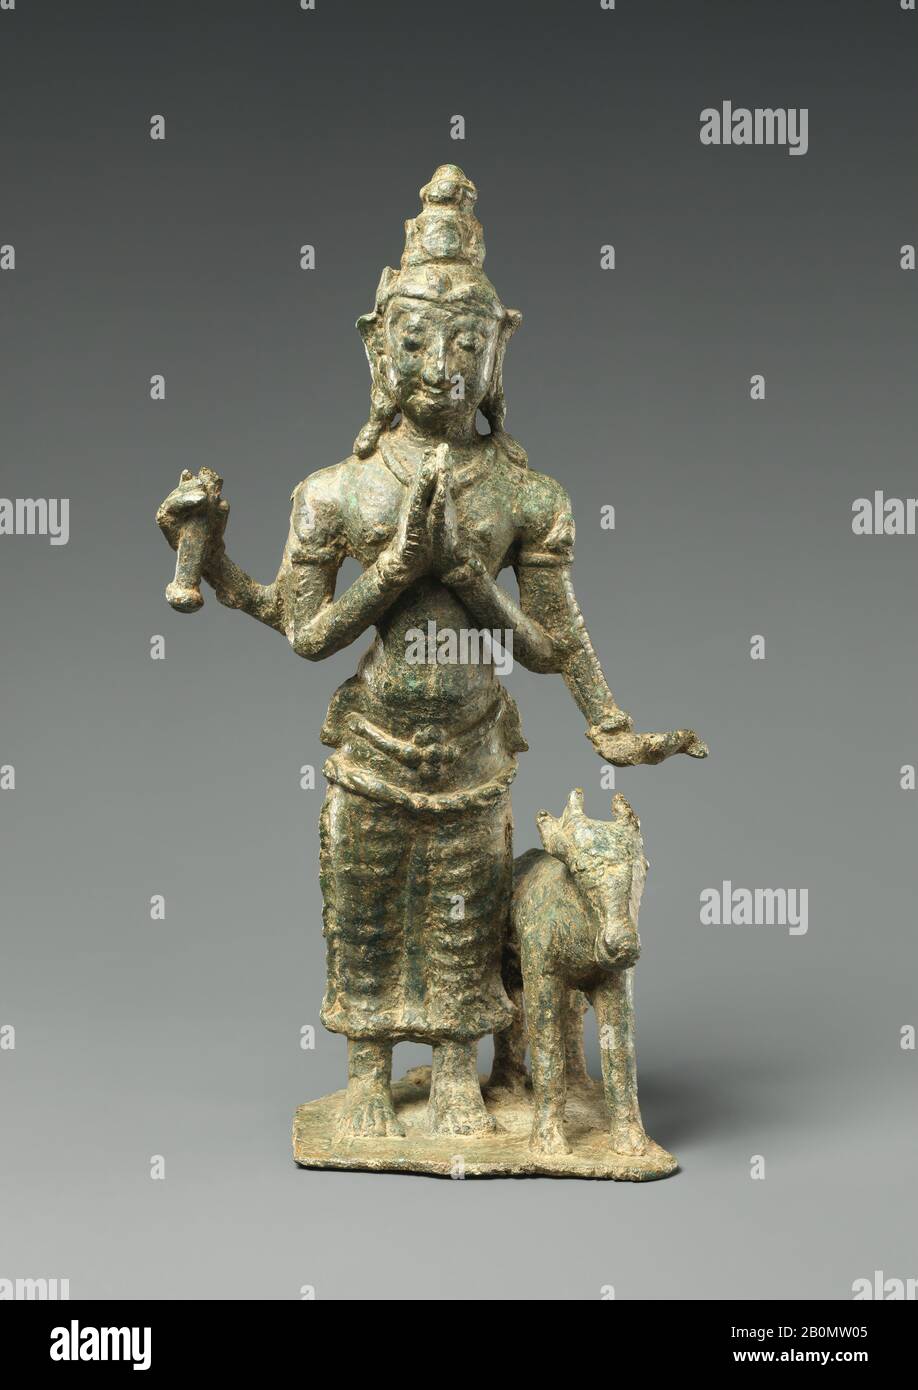 Yama, Herr des Todes: Regent des Südens, Sri Lanka, Anuradhapura, Datum 9. Jahrhundert, Sri Lanka, Bronze, H. 9 Zoll (22,9 cm); W. 5 Zoll (12,7 cm); D. 3 7/8 Zoll (9,8 cm), Skulptur Stockfoto